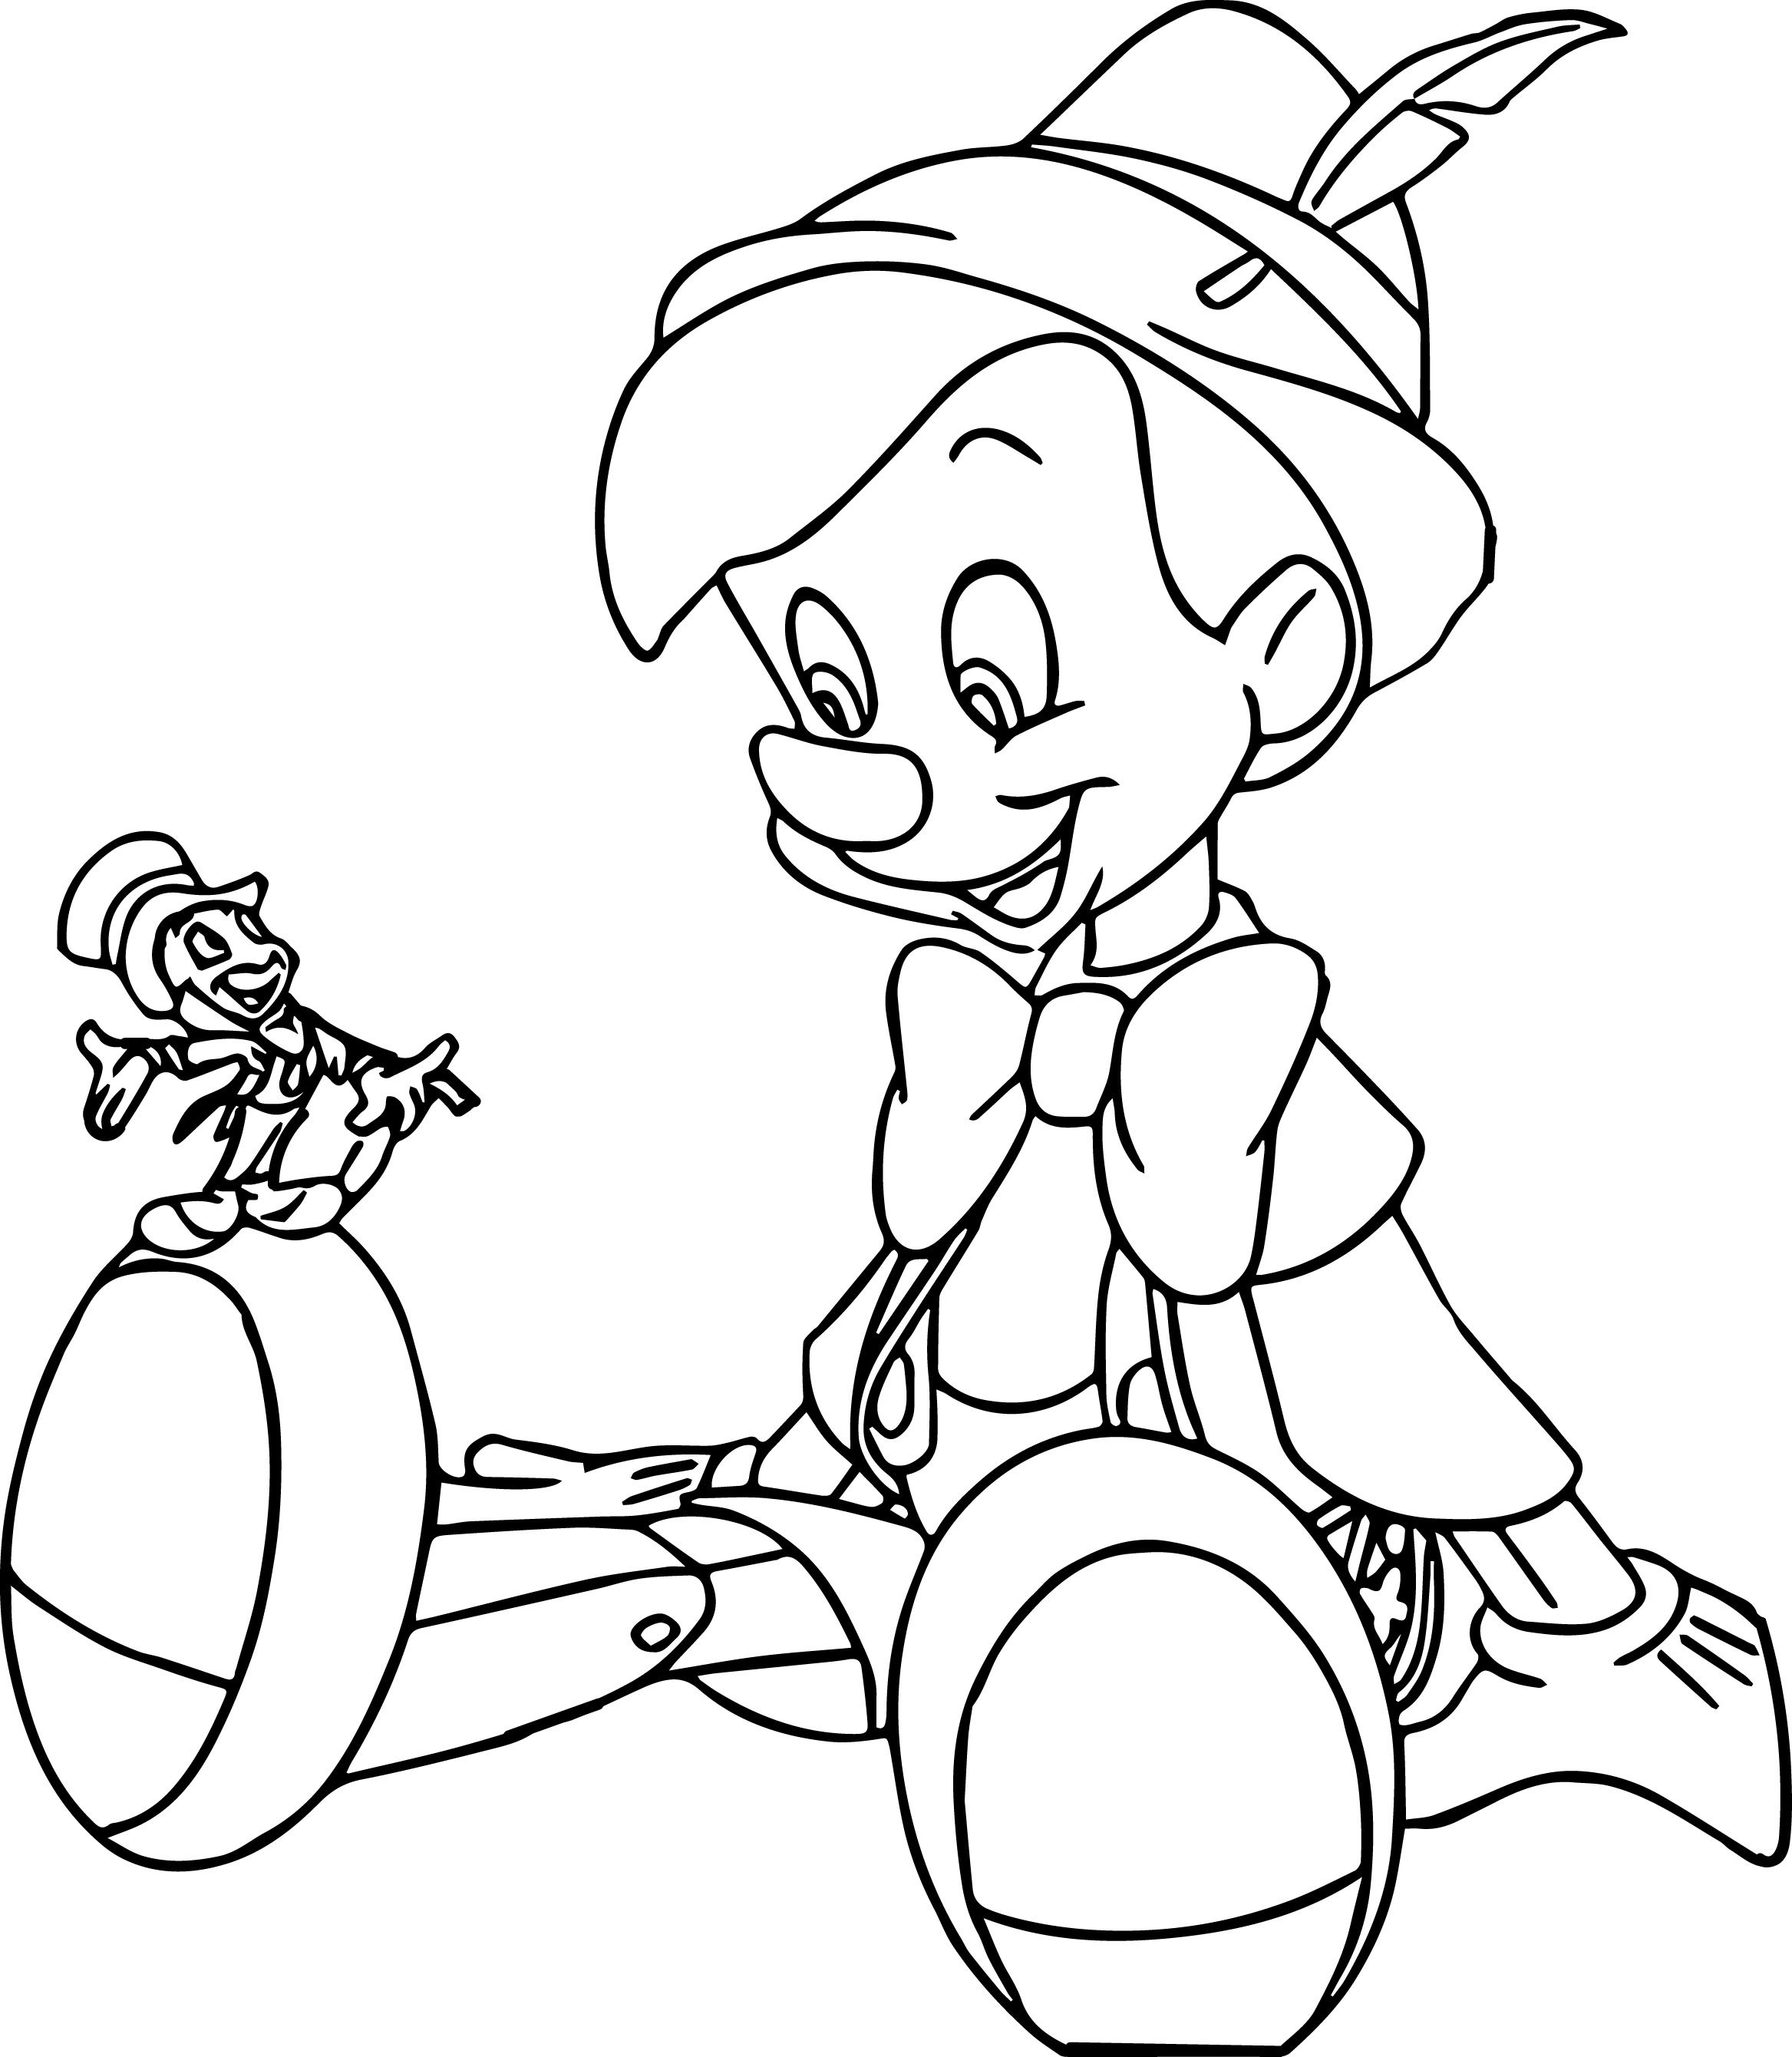 Пиноккио рисовать